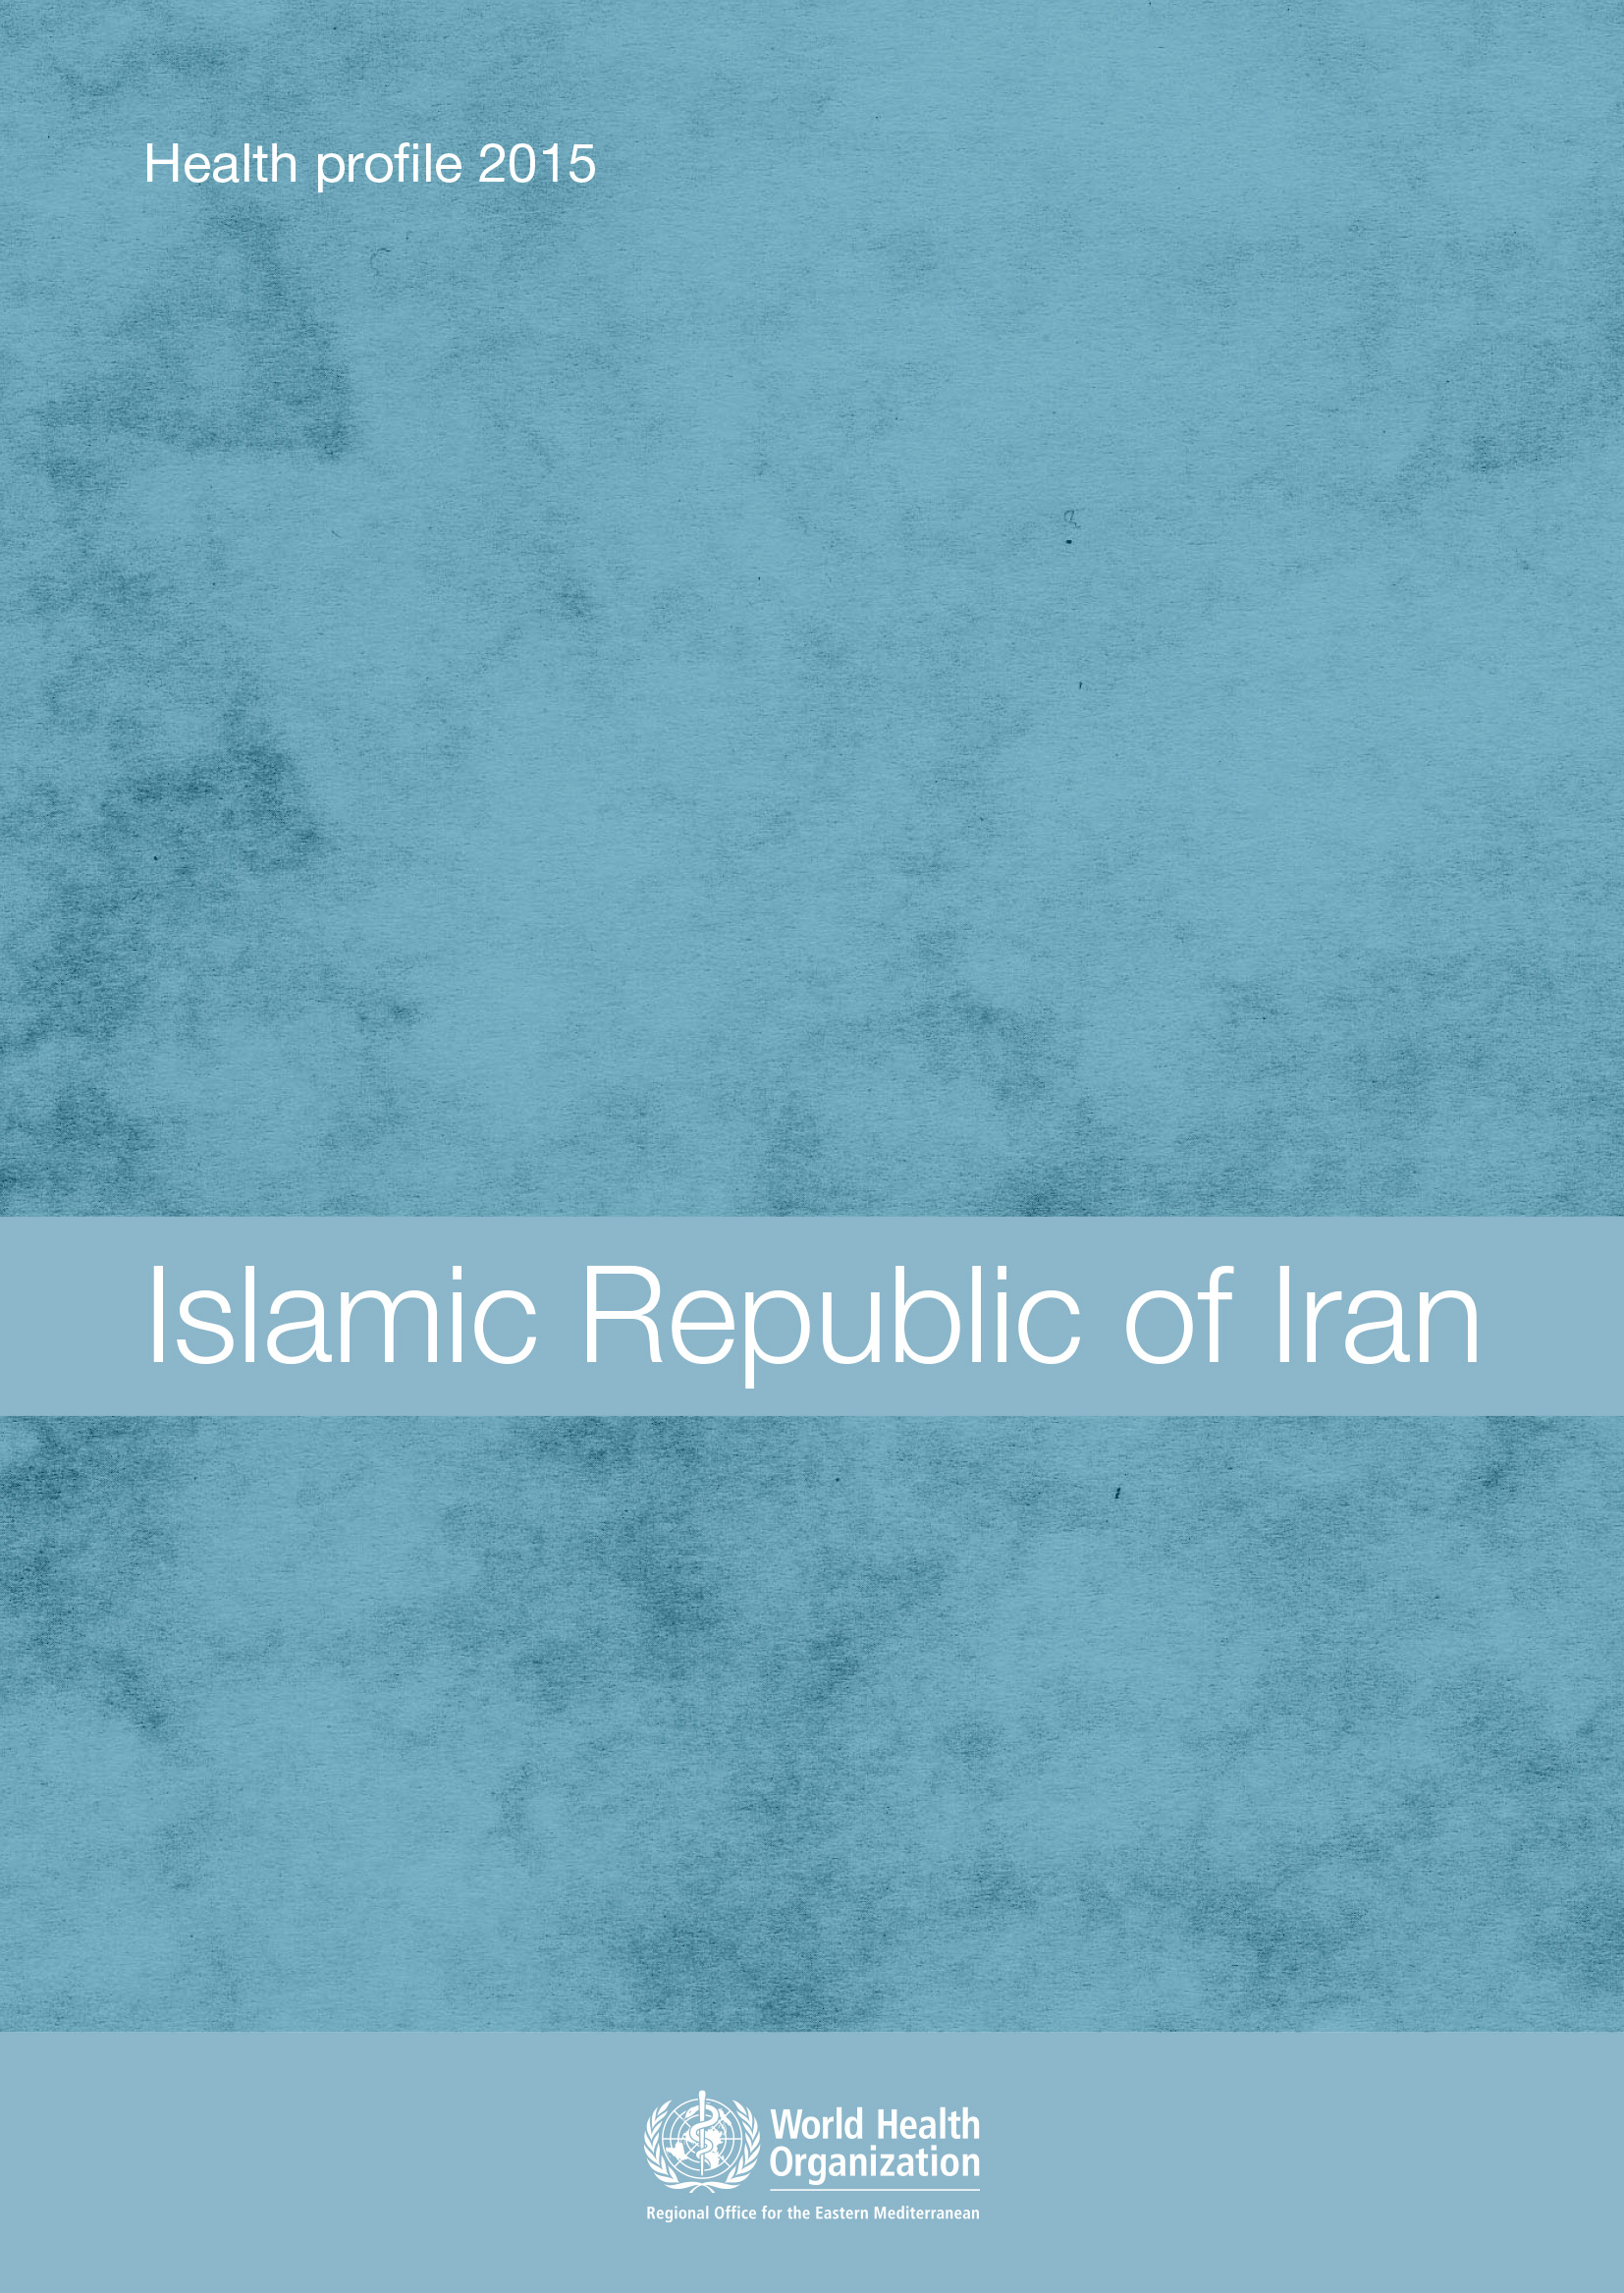 Perfil sanitario de la República Islámica de Irán en 2015 